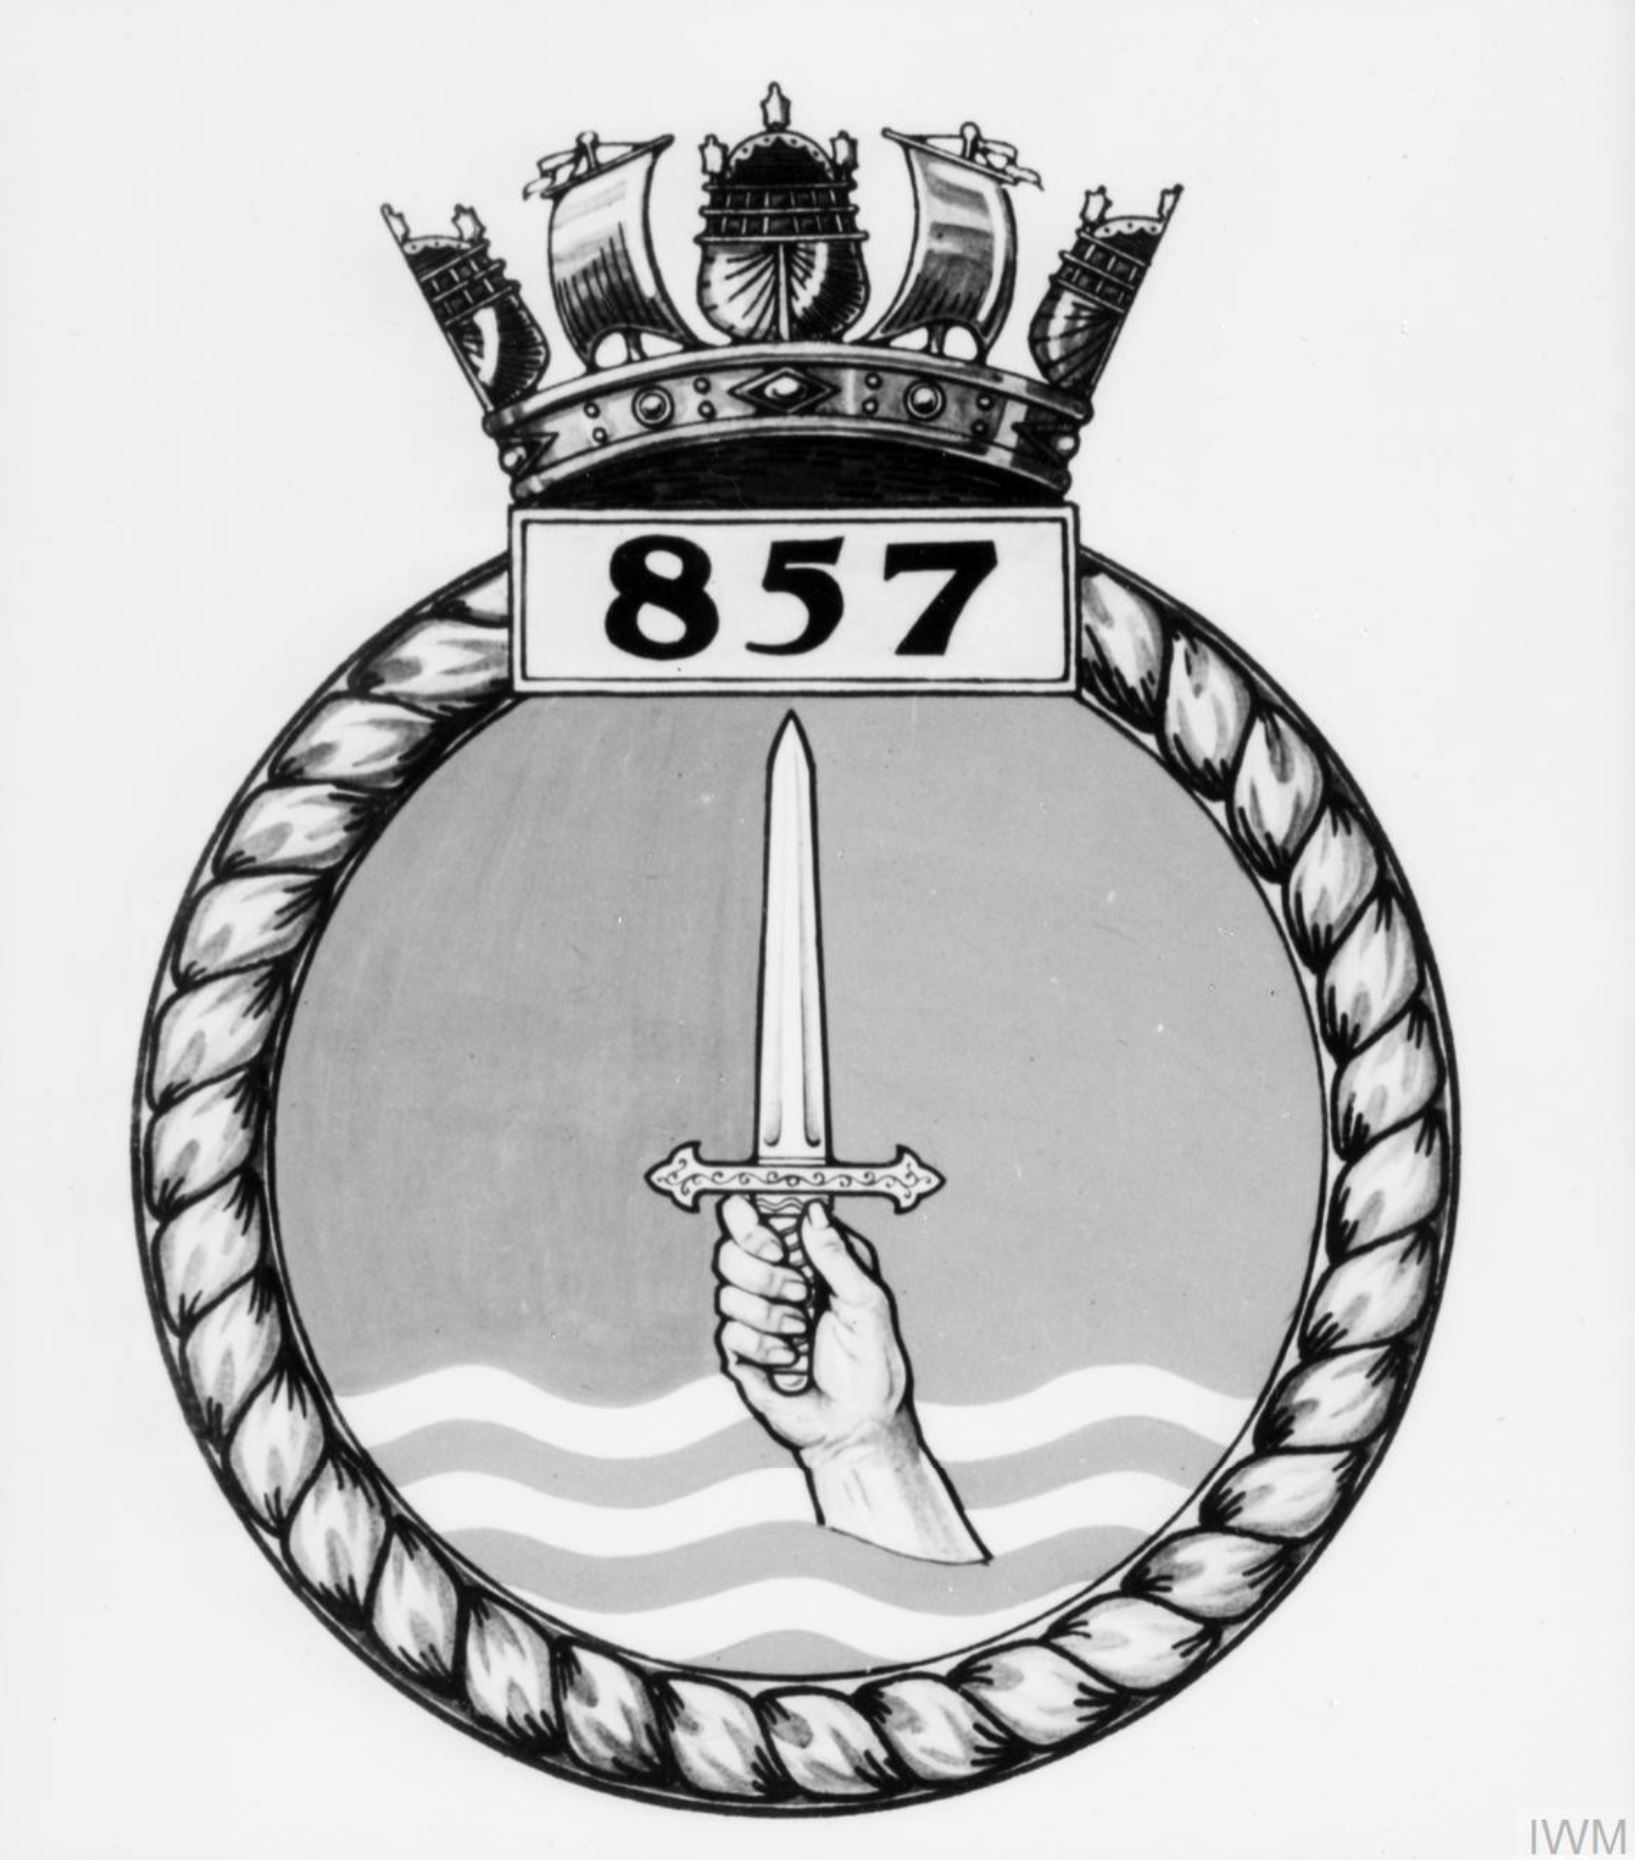 Fleet Air Arm crest of 857 Squadron IWM A26787